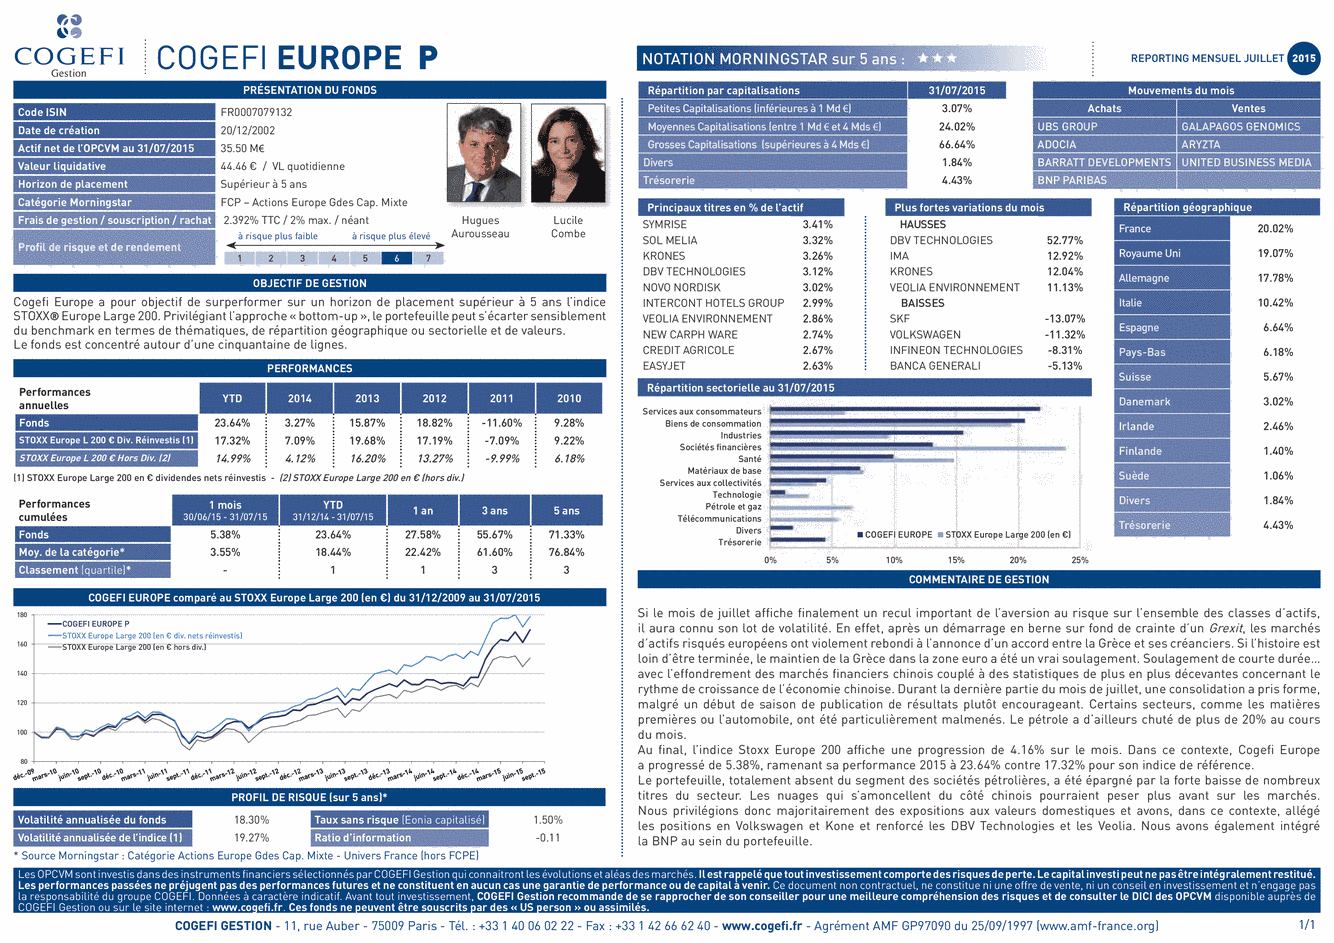 Fiche Produit Cogefi Europe P - 31/07/2015 - Français